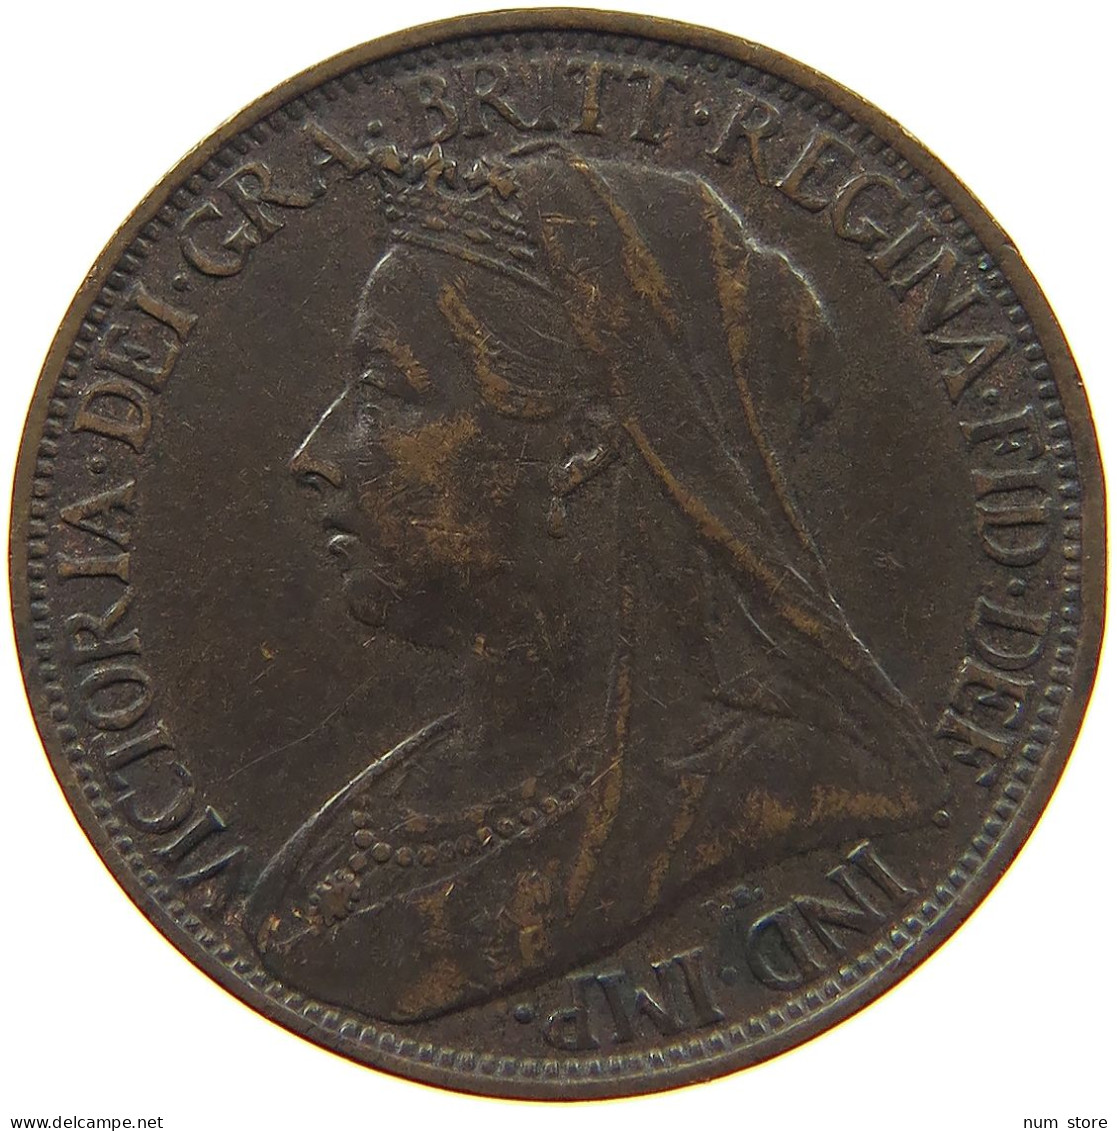 GREAT BRITAIN FARTHING 1901 Victoria 1837-1901 #c006 0199 - B. 1 Farthing